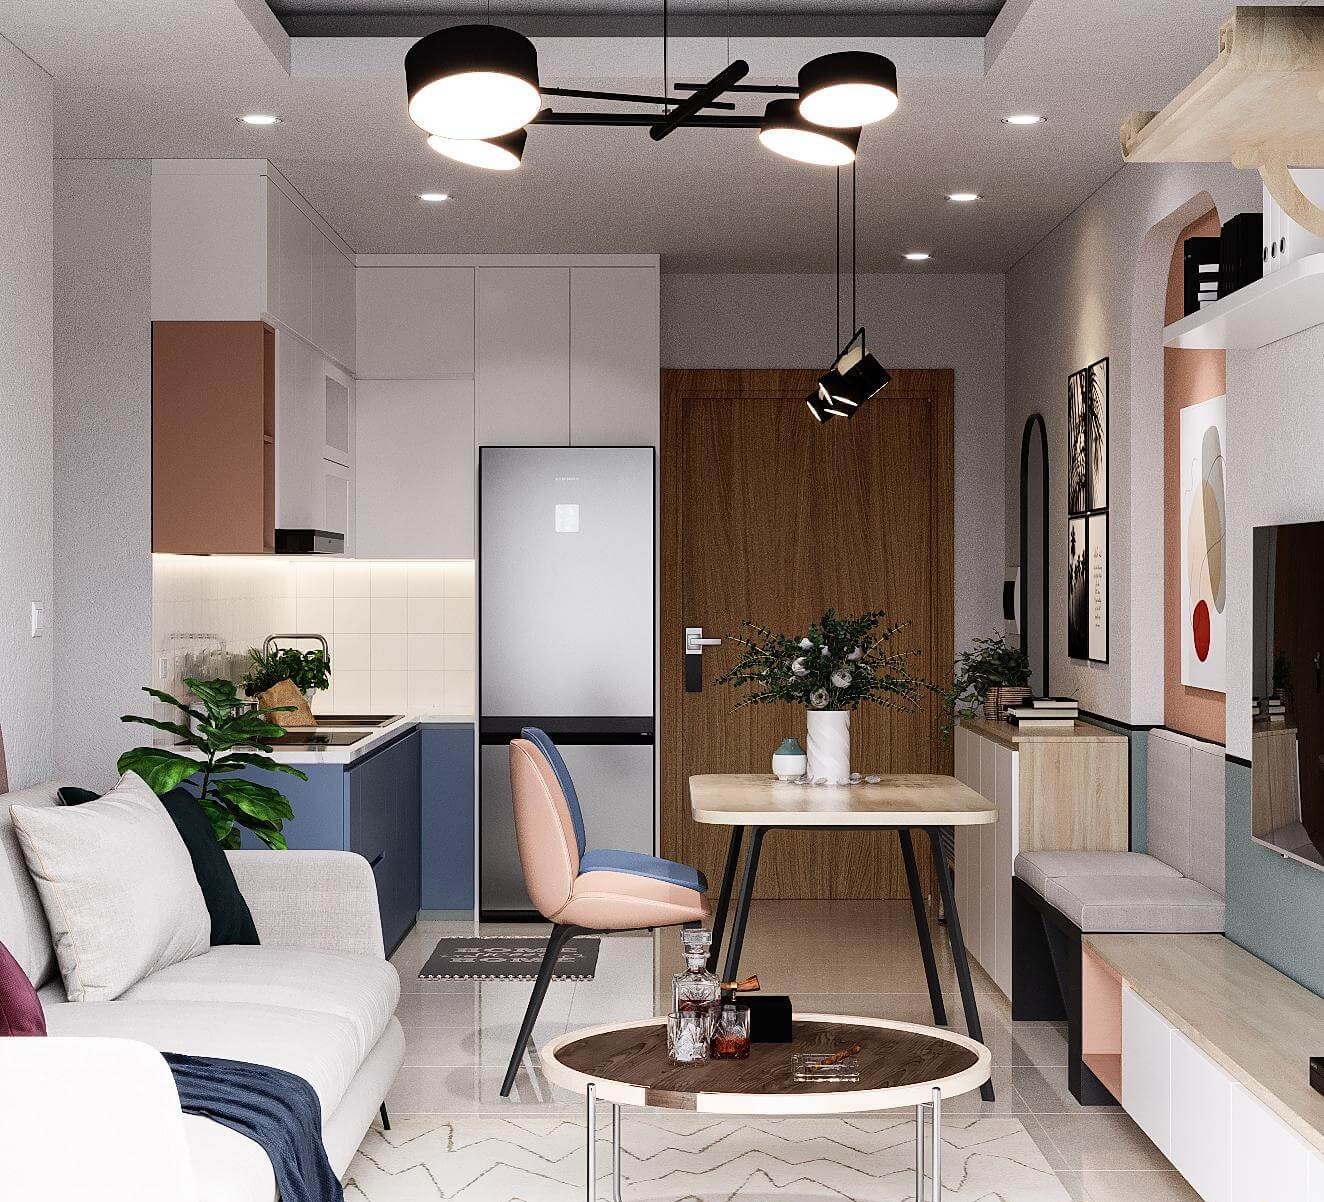 5+ mẫu thiết kế nội thất phòng ngủ căn hộ chung cư đẹp mãn nhãn